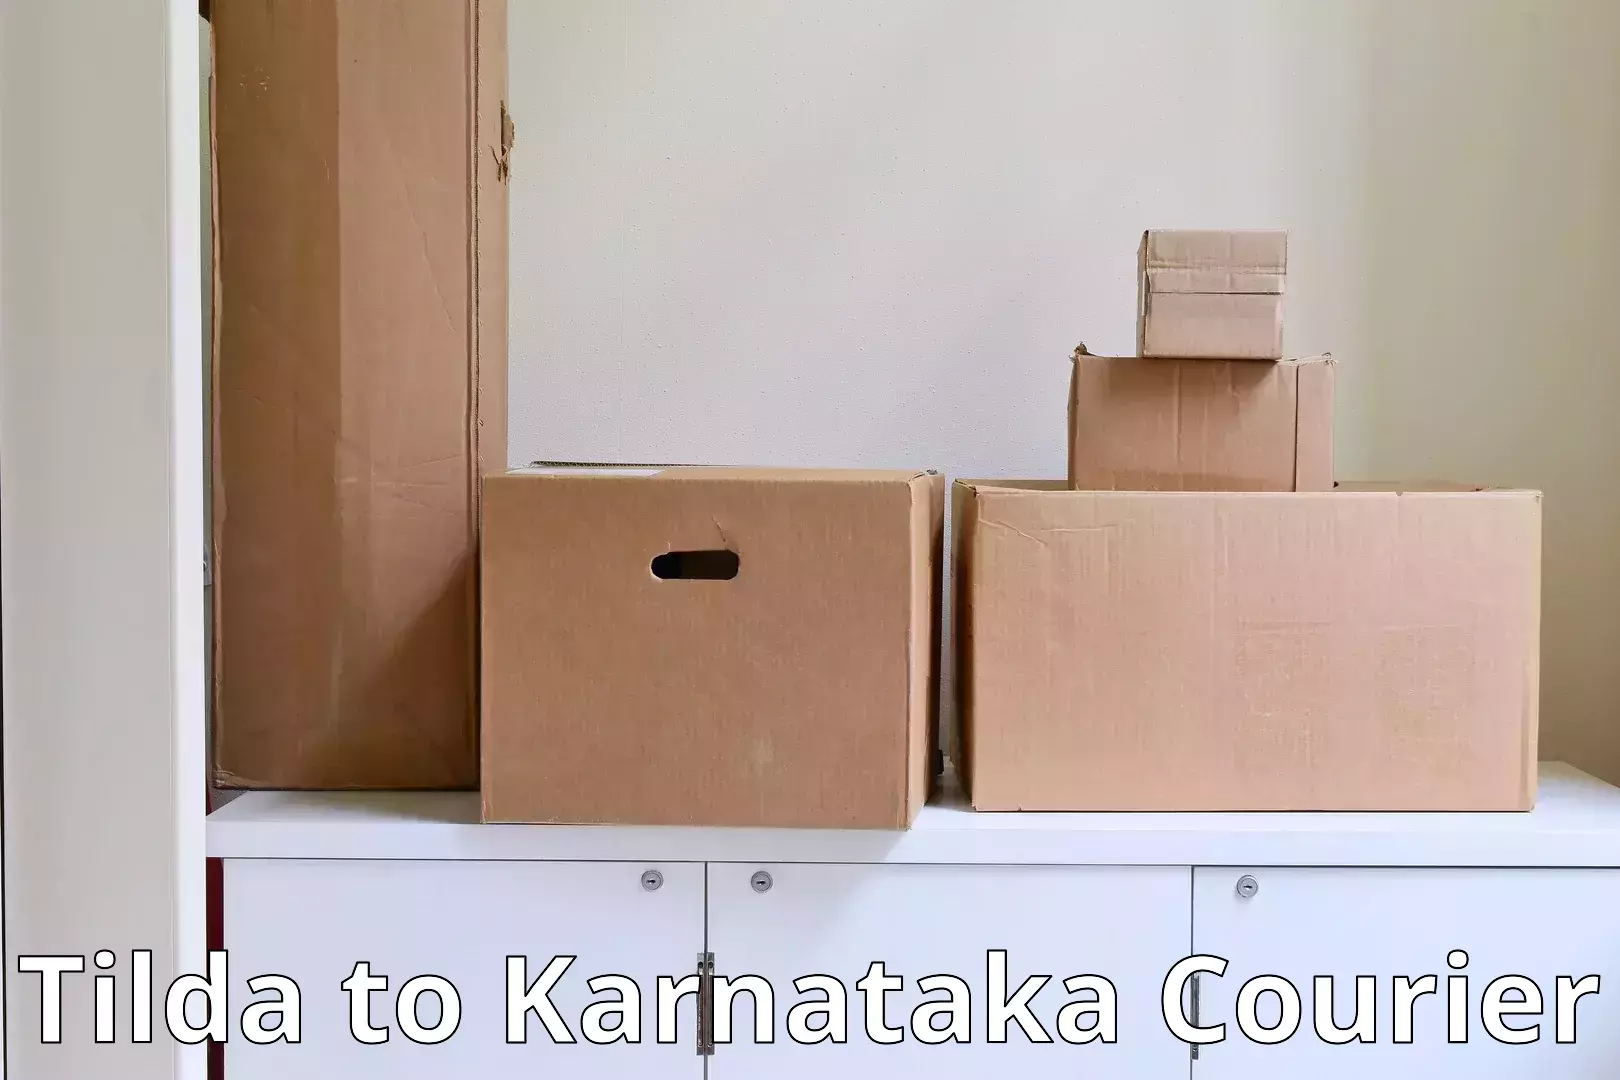 Skilled furniture movers Tilda to Rattihalli